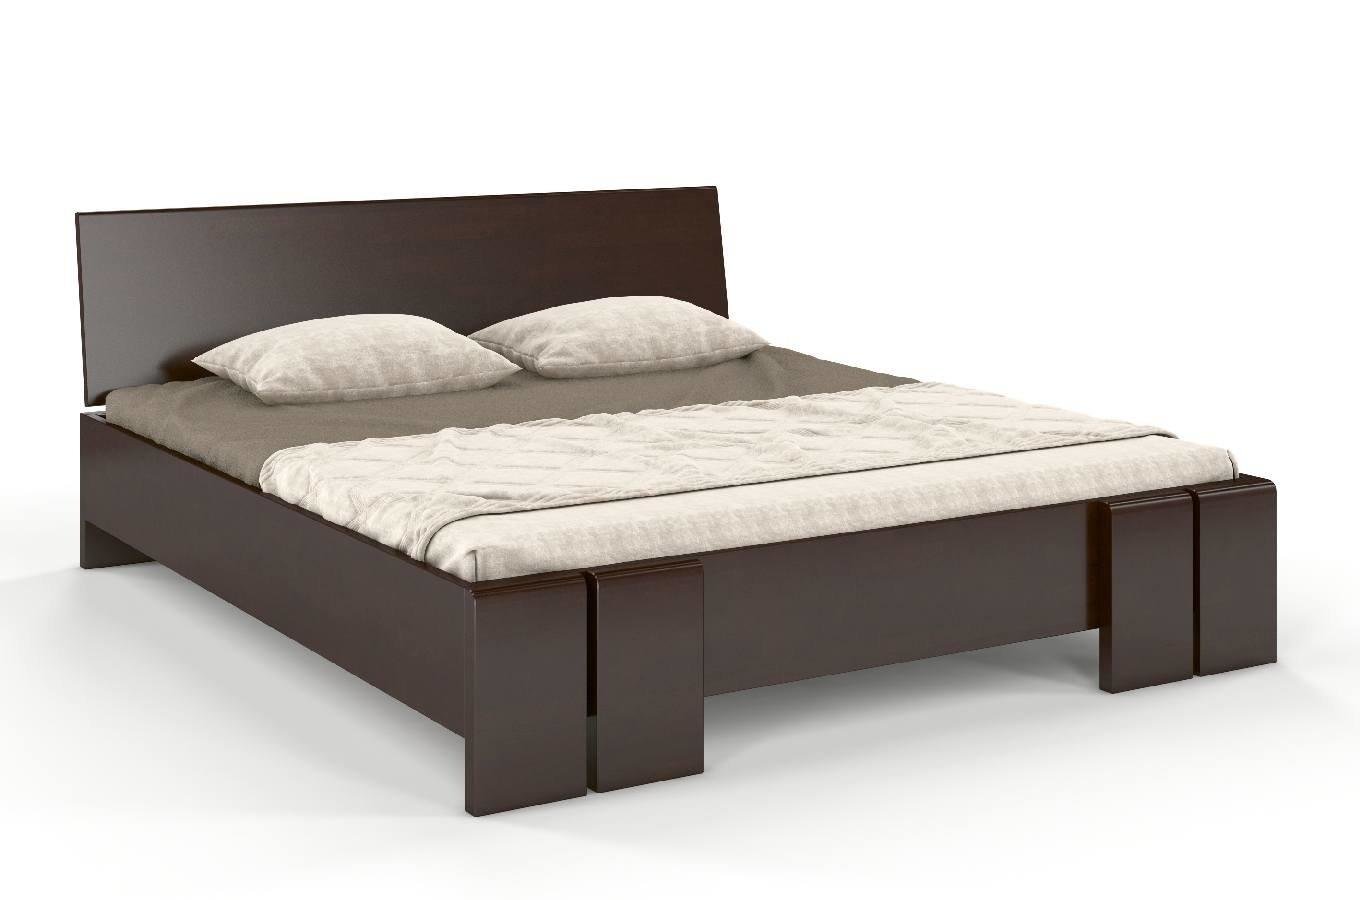 Łóżko drewniane bukowe ze skrzynią na pościel Skandica VESTRE Maxi & ST / 140x200 cm, kolor palisander